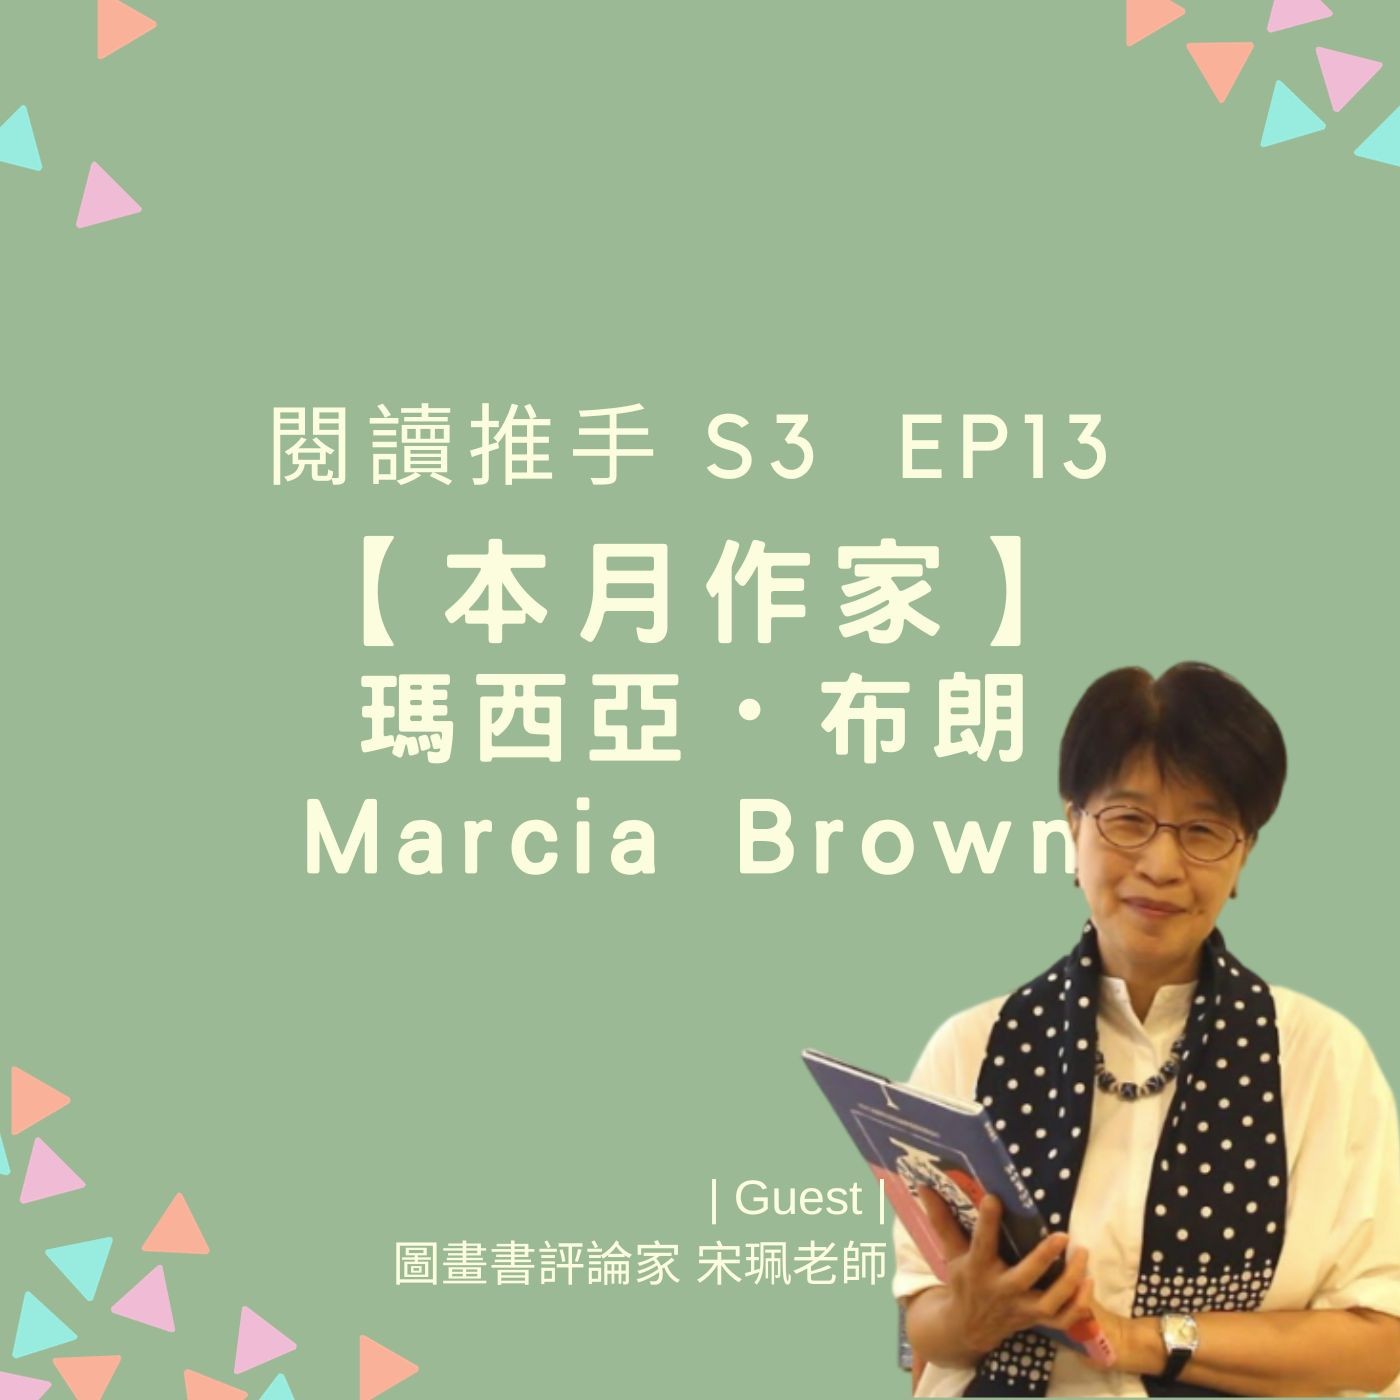 #閱讀推手 S3 EP13【本月作家】瑪西亞・布朗Marcia Browne ( HOST.黃迺毓  GUEST.宋珮老師 )